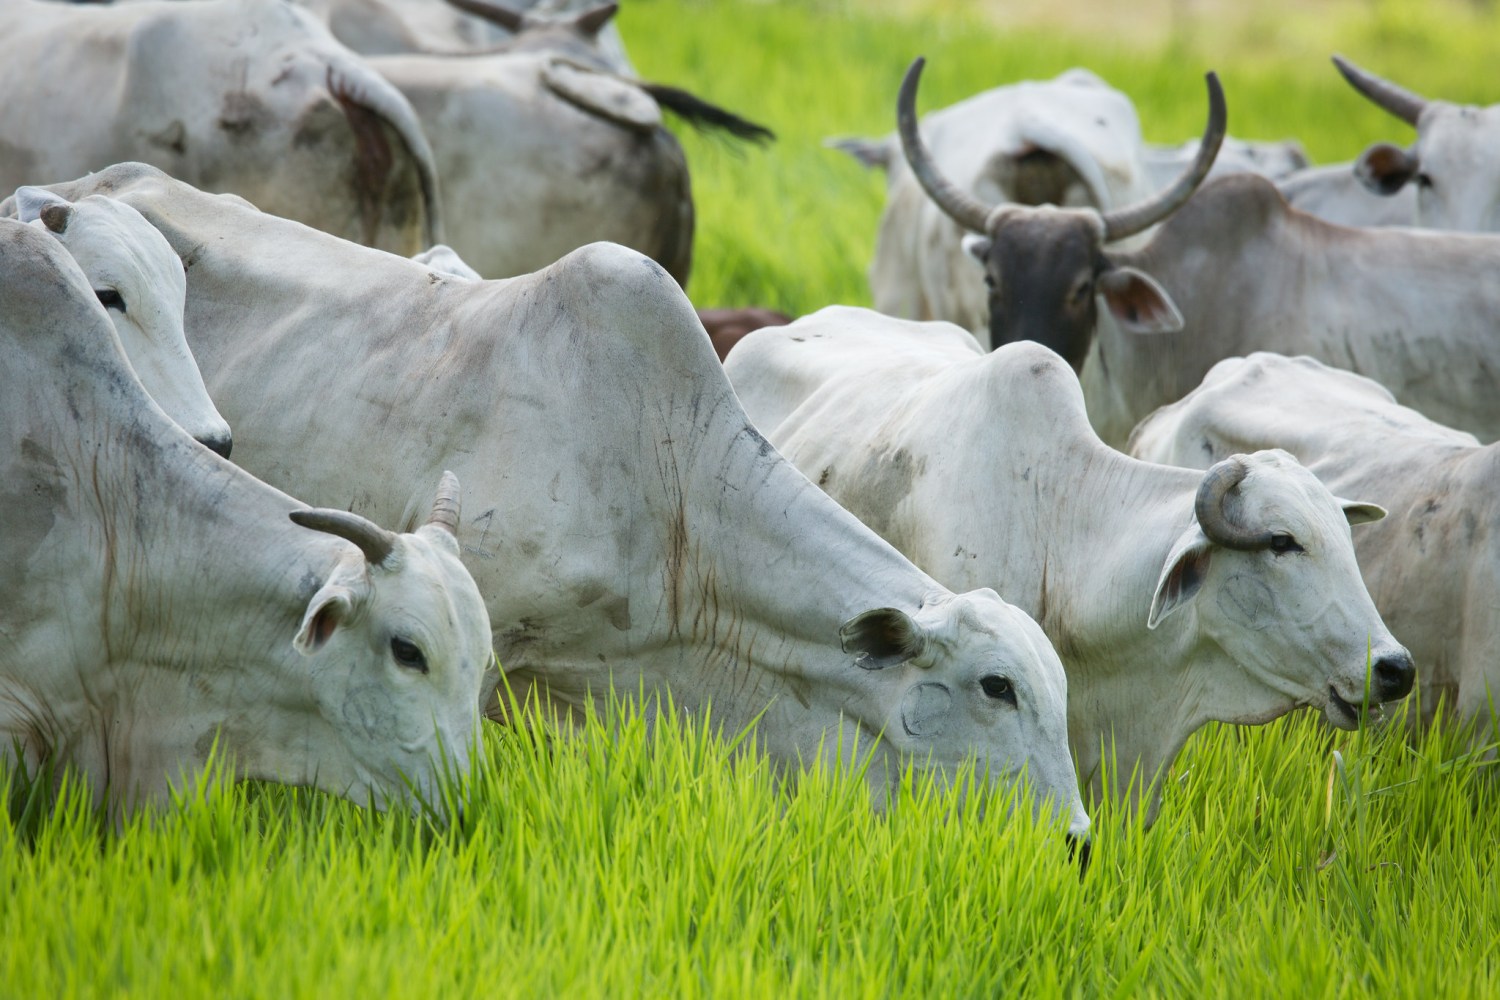 Bovinocultura - vacas nelore pastando com bezerros 3